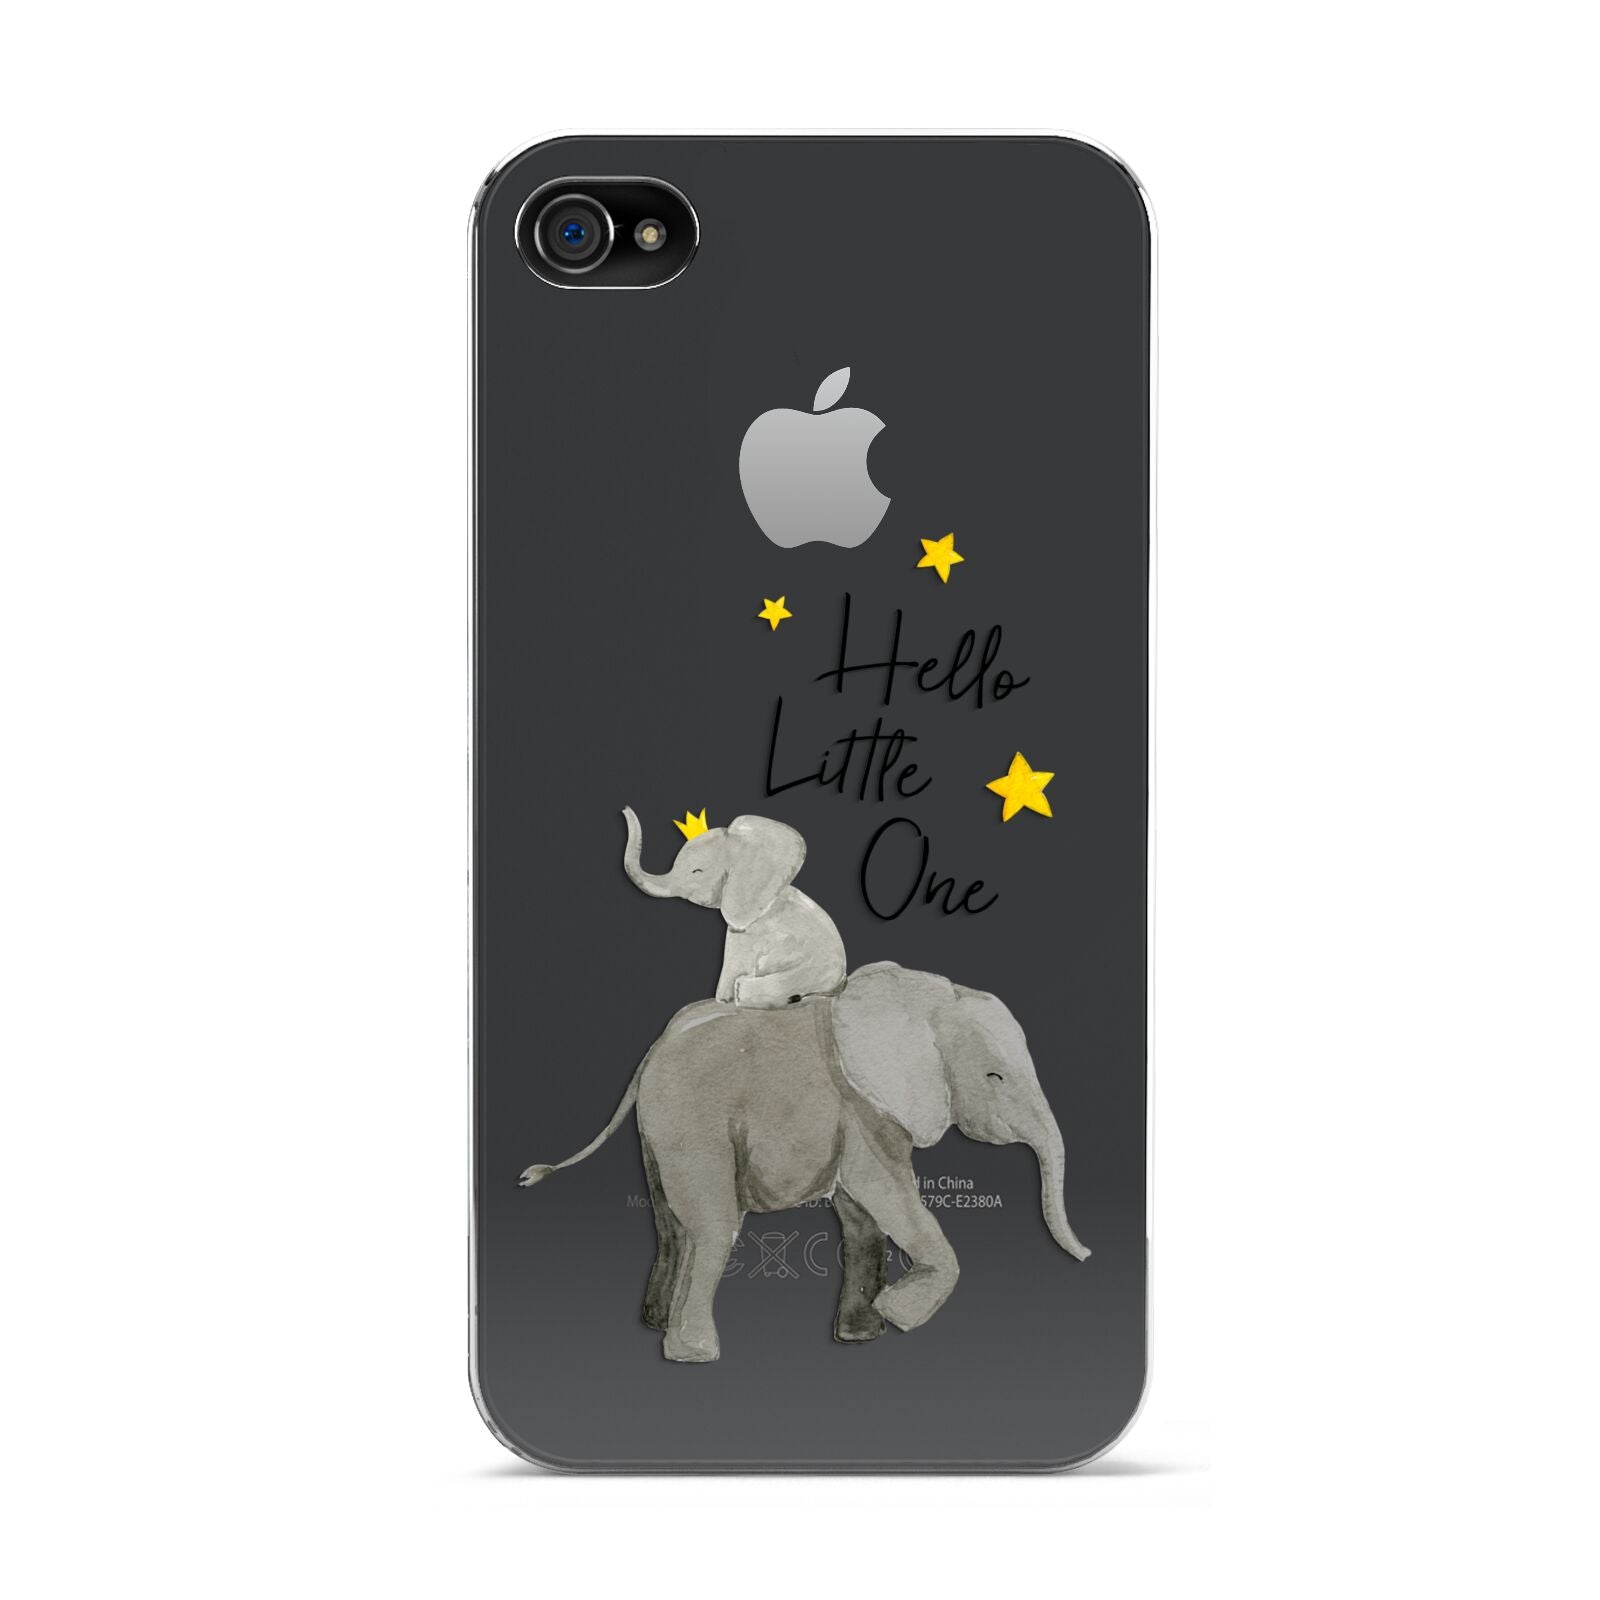 Baby Elephant Apple iPhone 4s Case